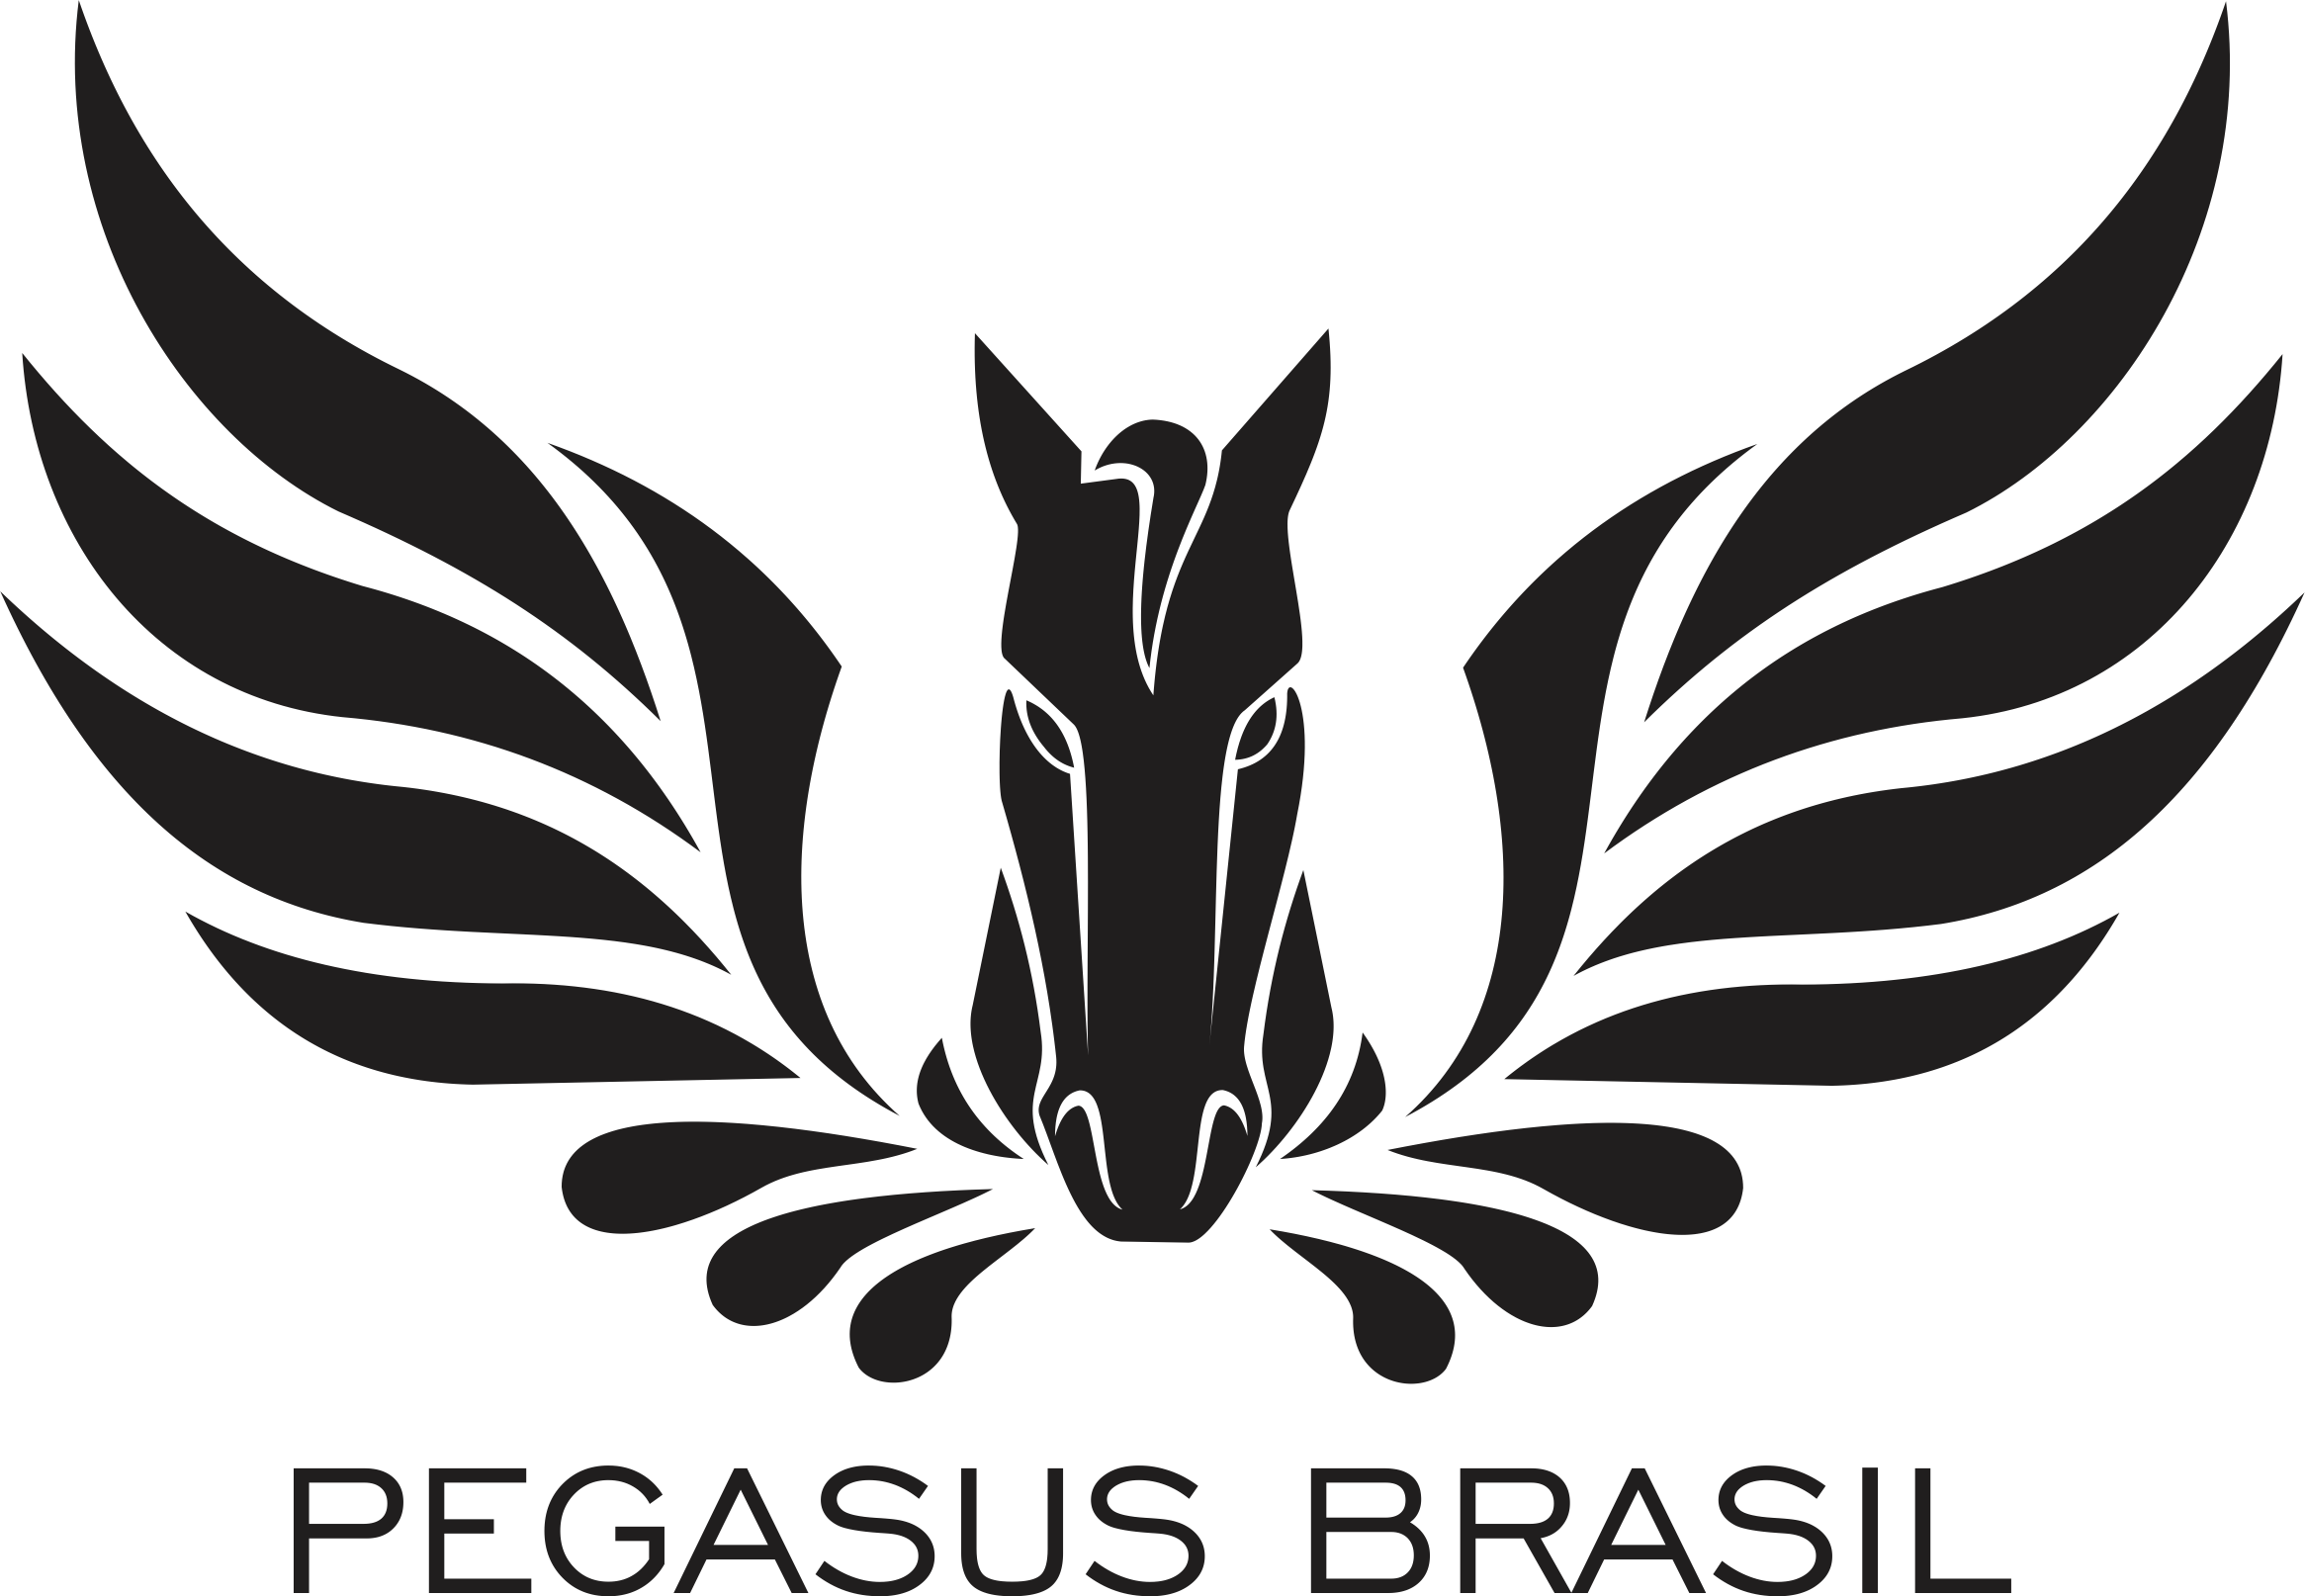 Festival Pegasus Brasil repercute na mídia